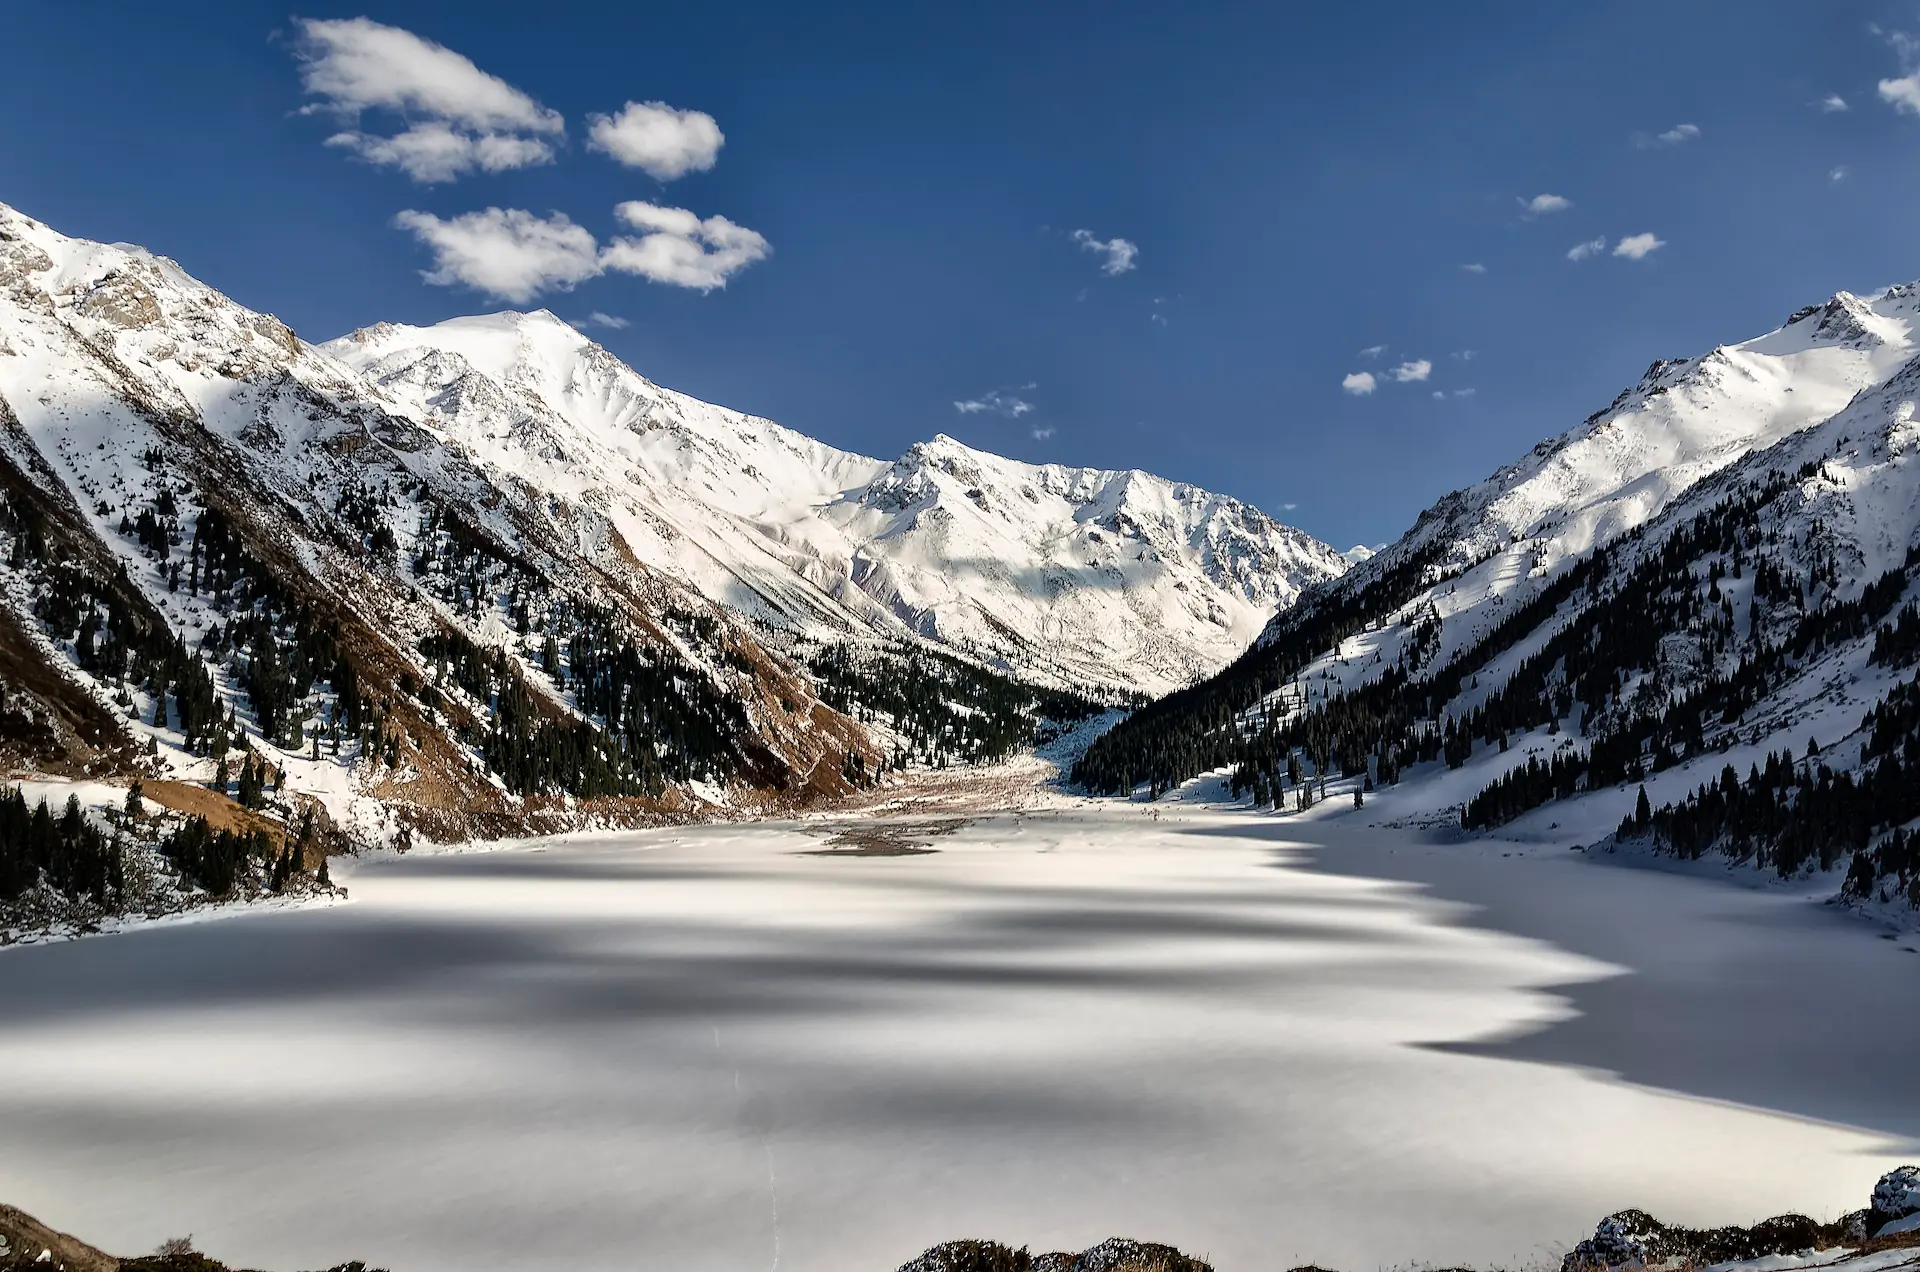 Un grand lac gelé entouré de montagnes enneigées